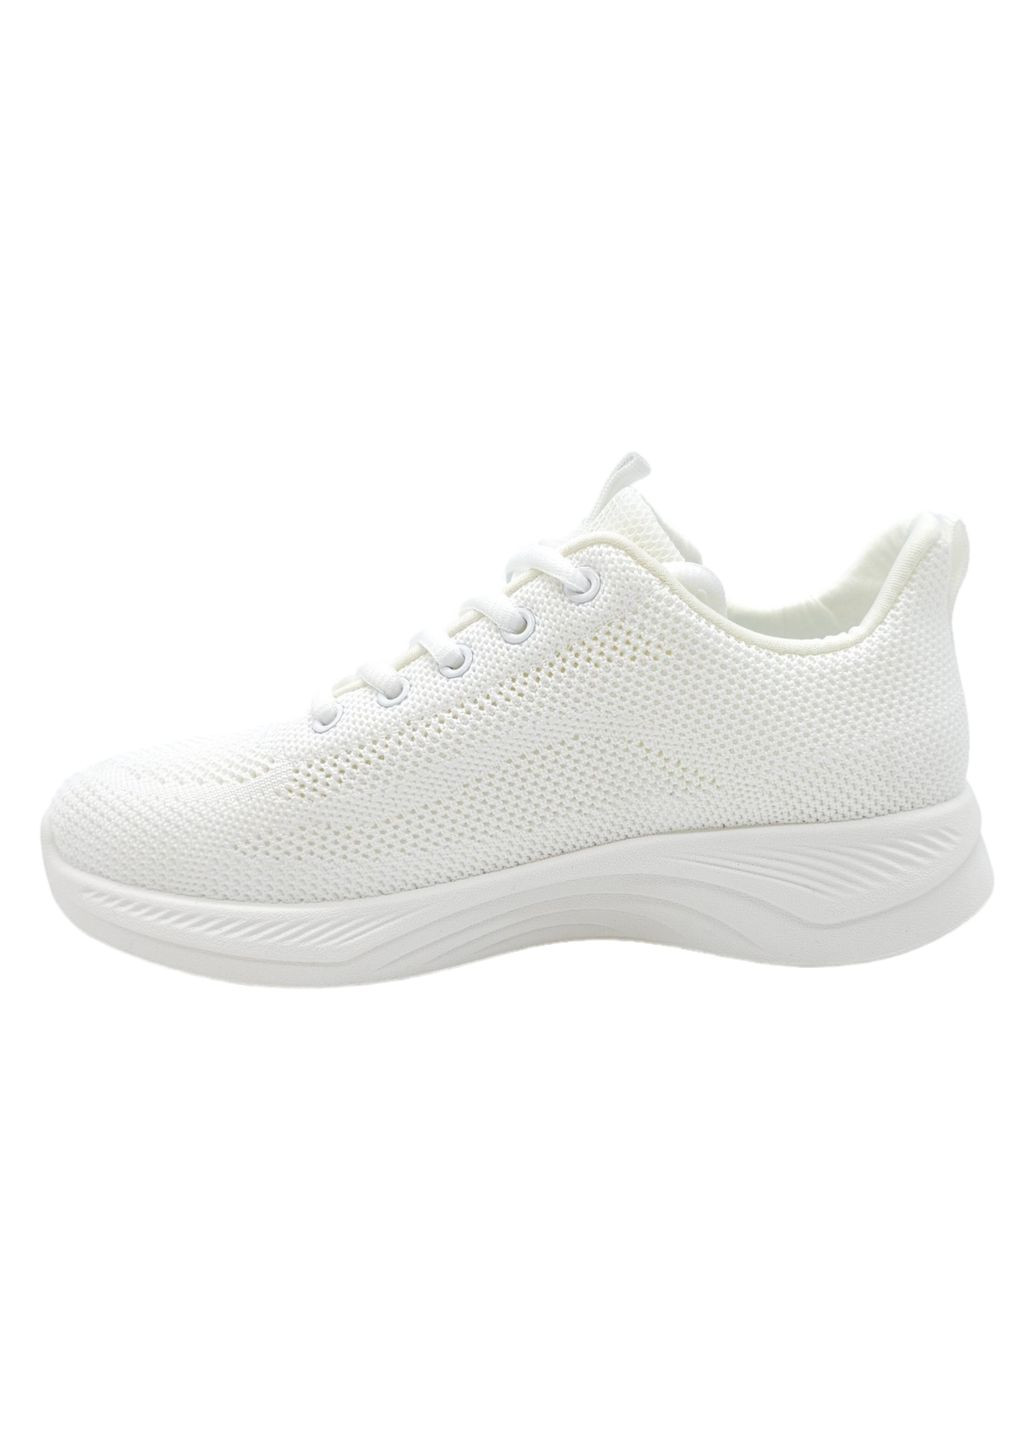 Белые всесезонные женские кроссовки белые текстиль l-16-41 23,5 см (р) Lonza